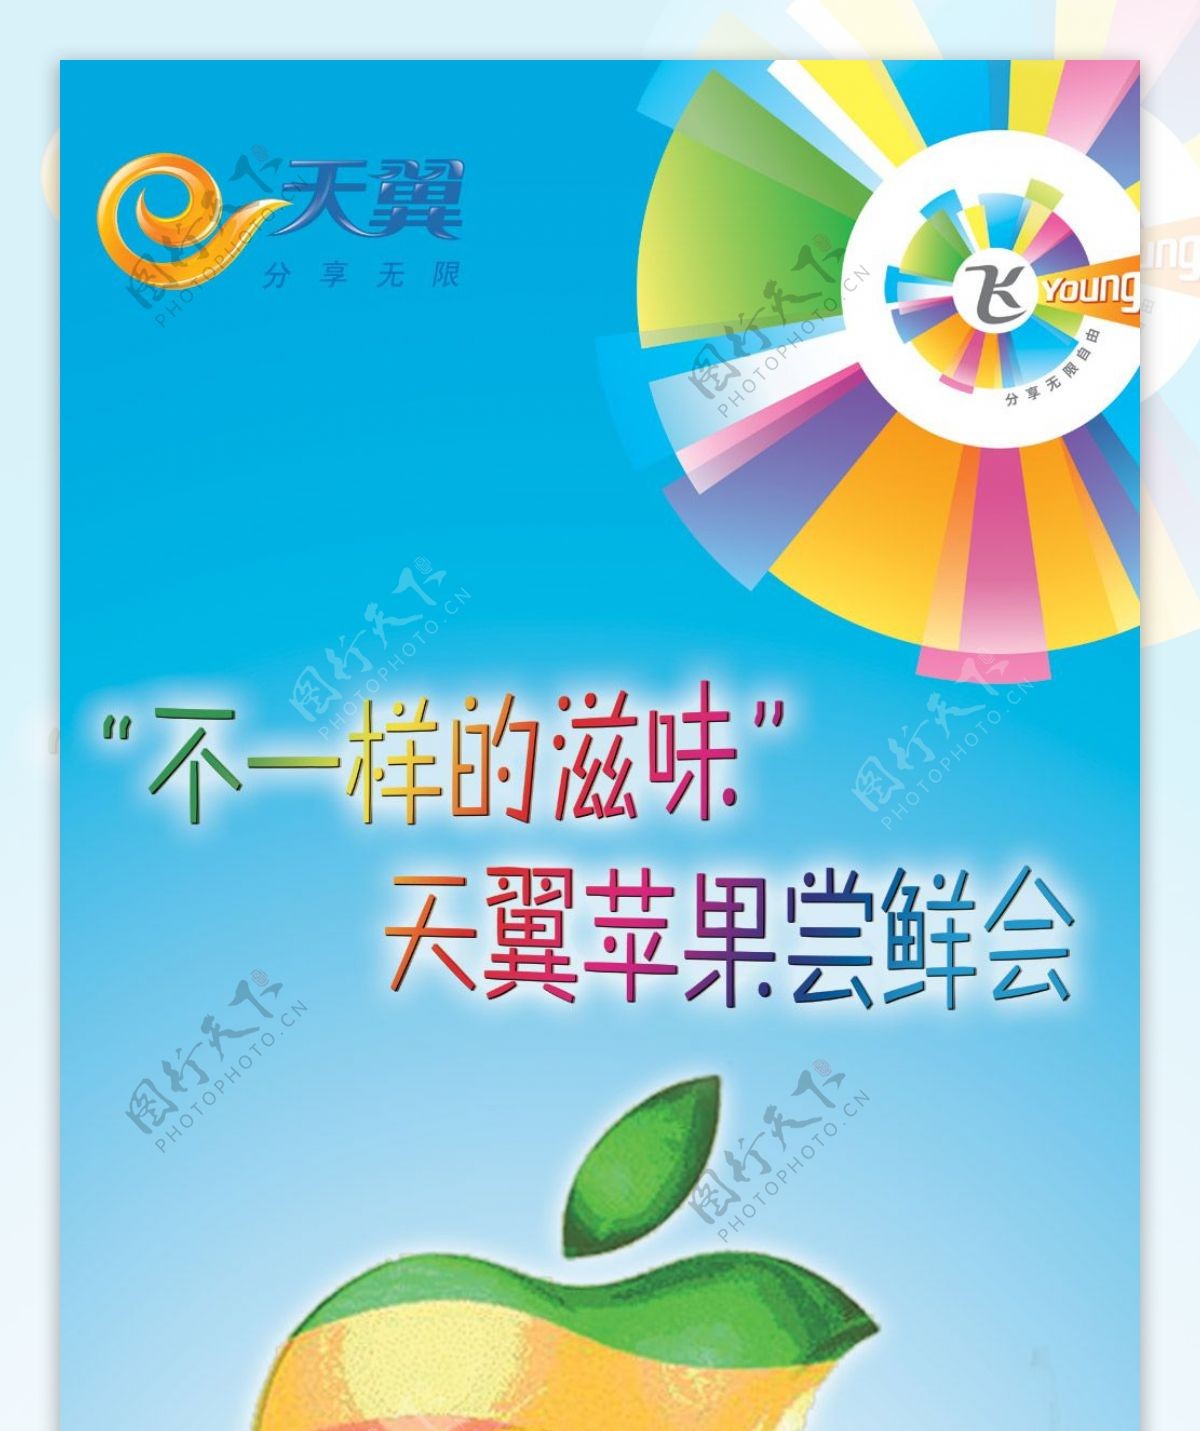 中国电信IPHONE4S海报PSD分